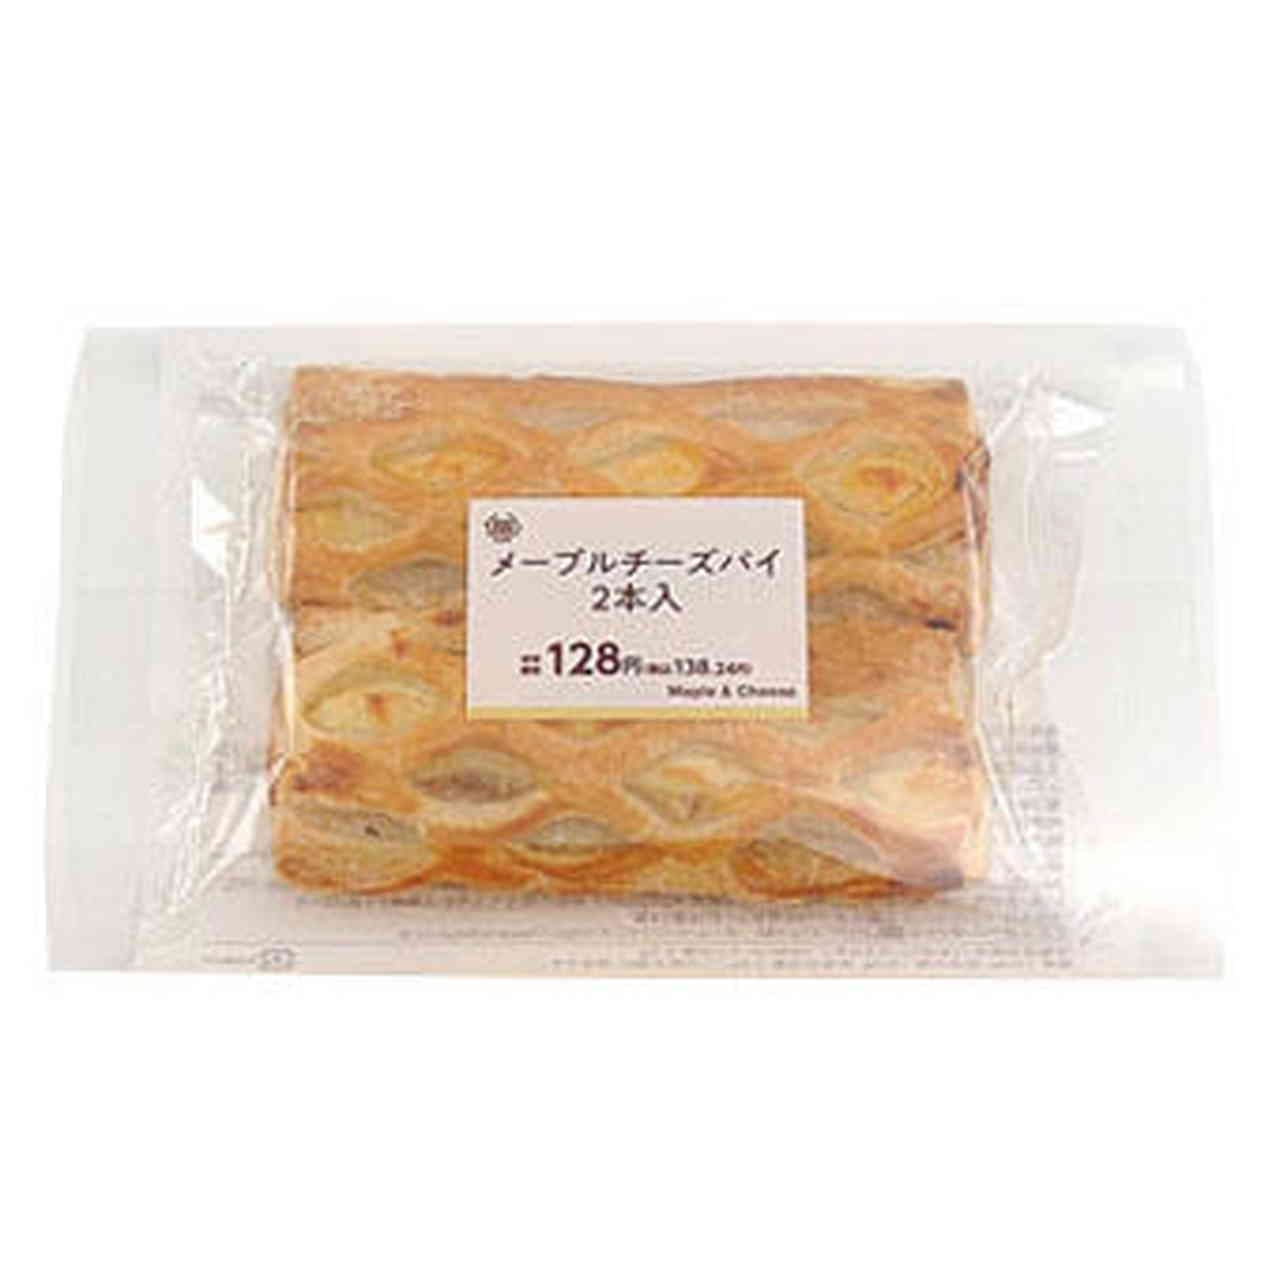 ミニストップ 新作スイーツ・菓子パン